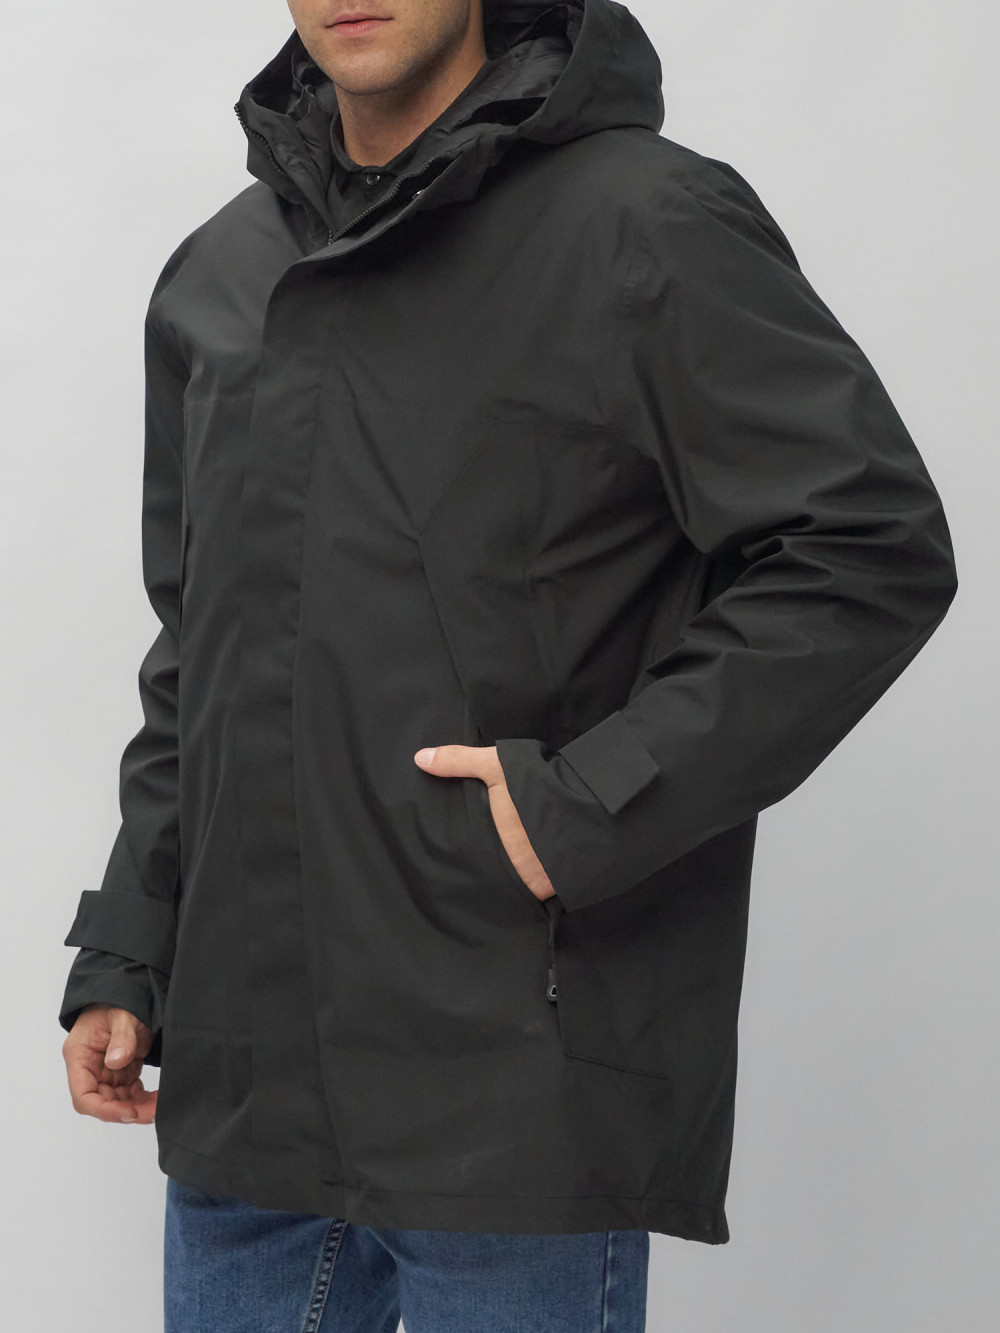 Купить куртку трансформер 3 в 1 оптом от производителя недорого в Москве 2359Ch 1